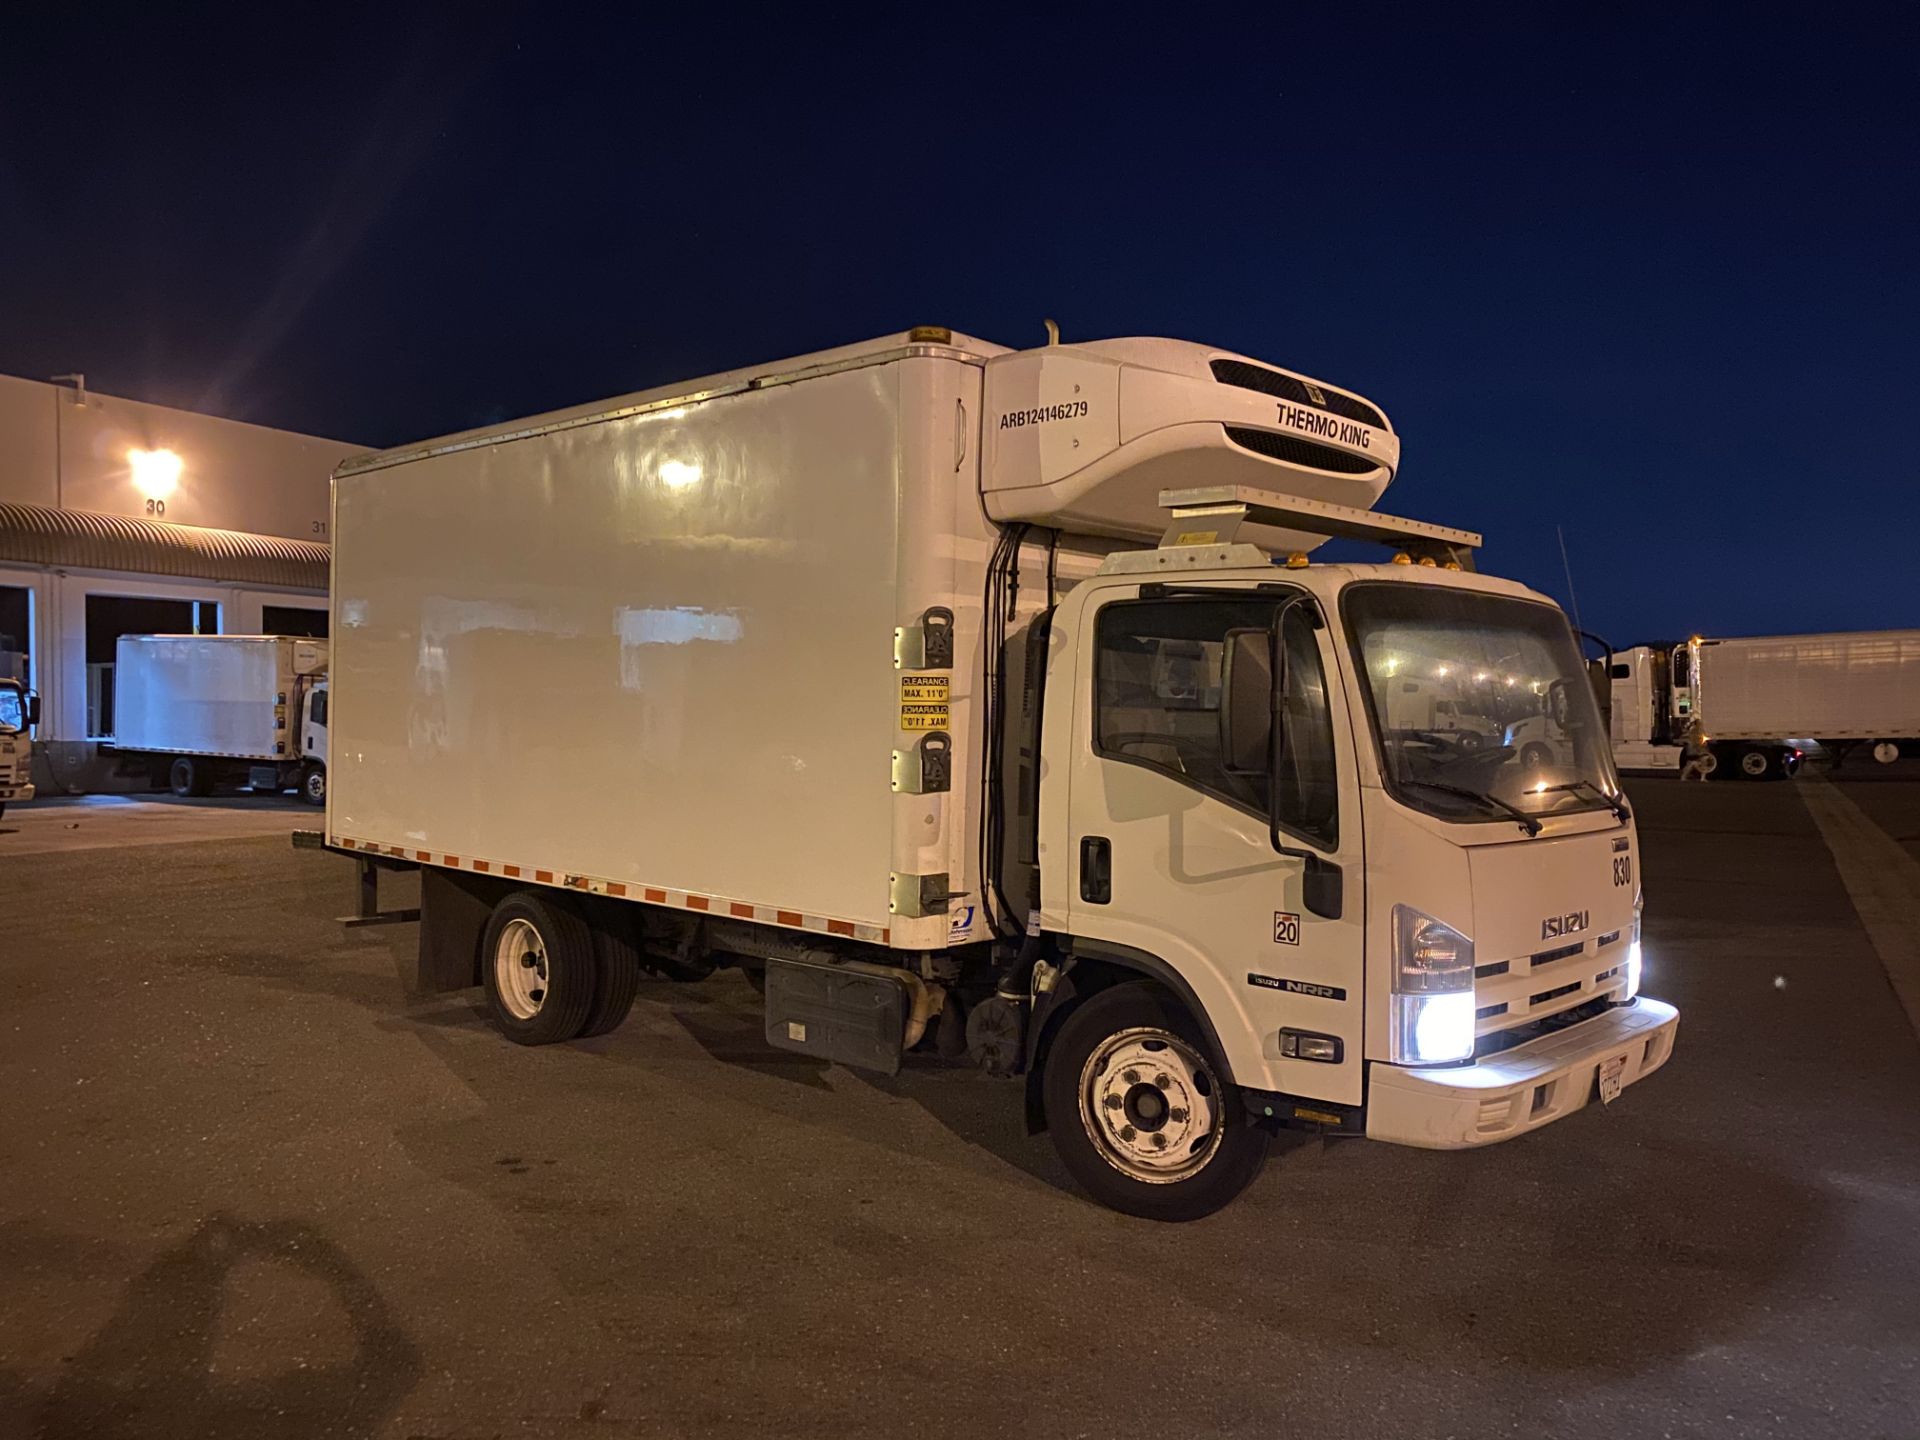 2013 Isuzu refrigerated truck - Image 4 of 9